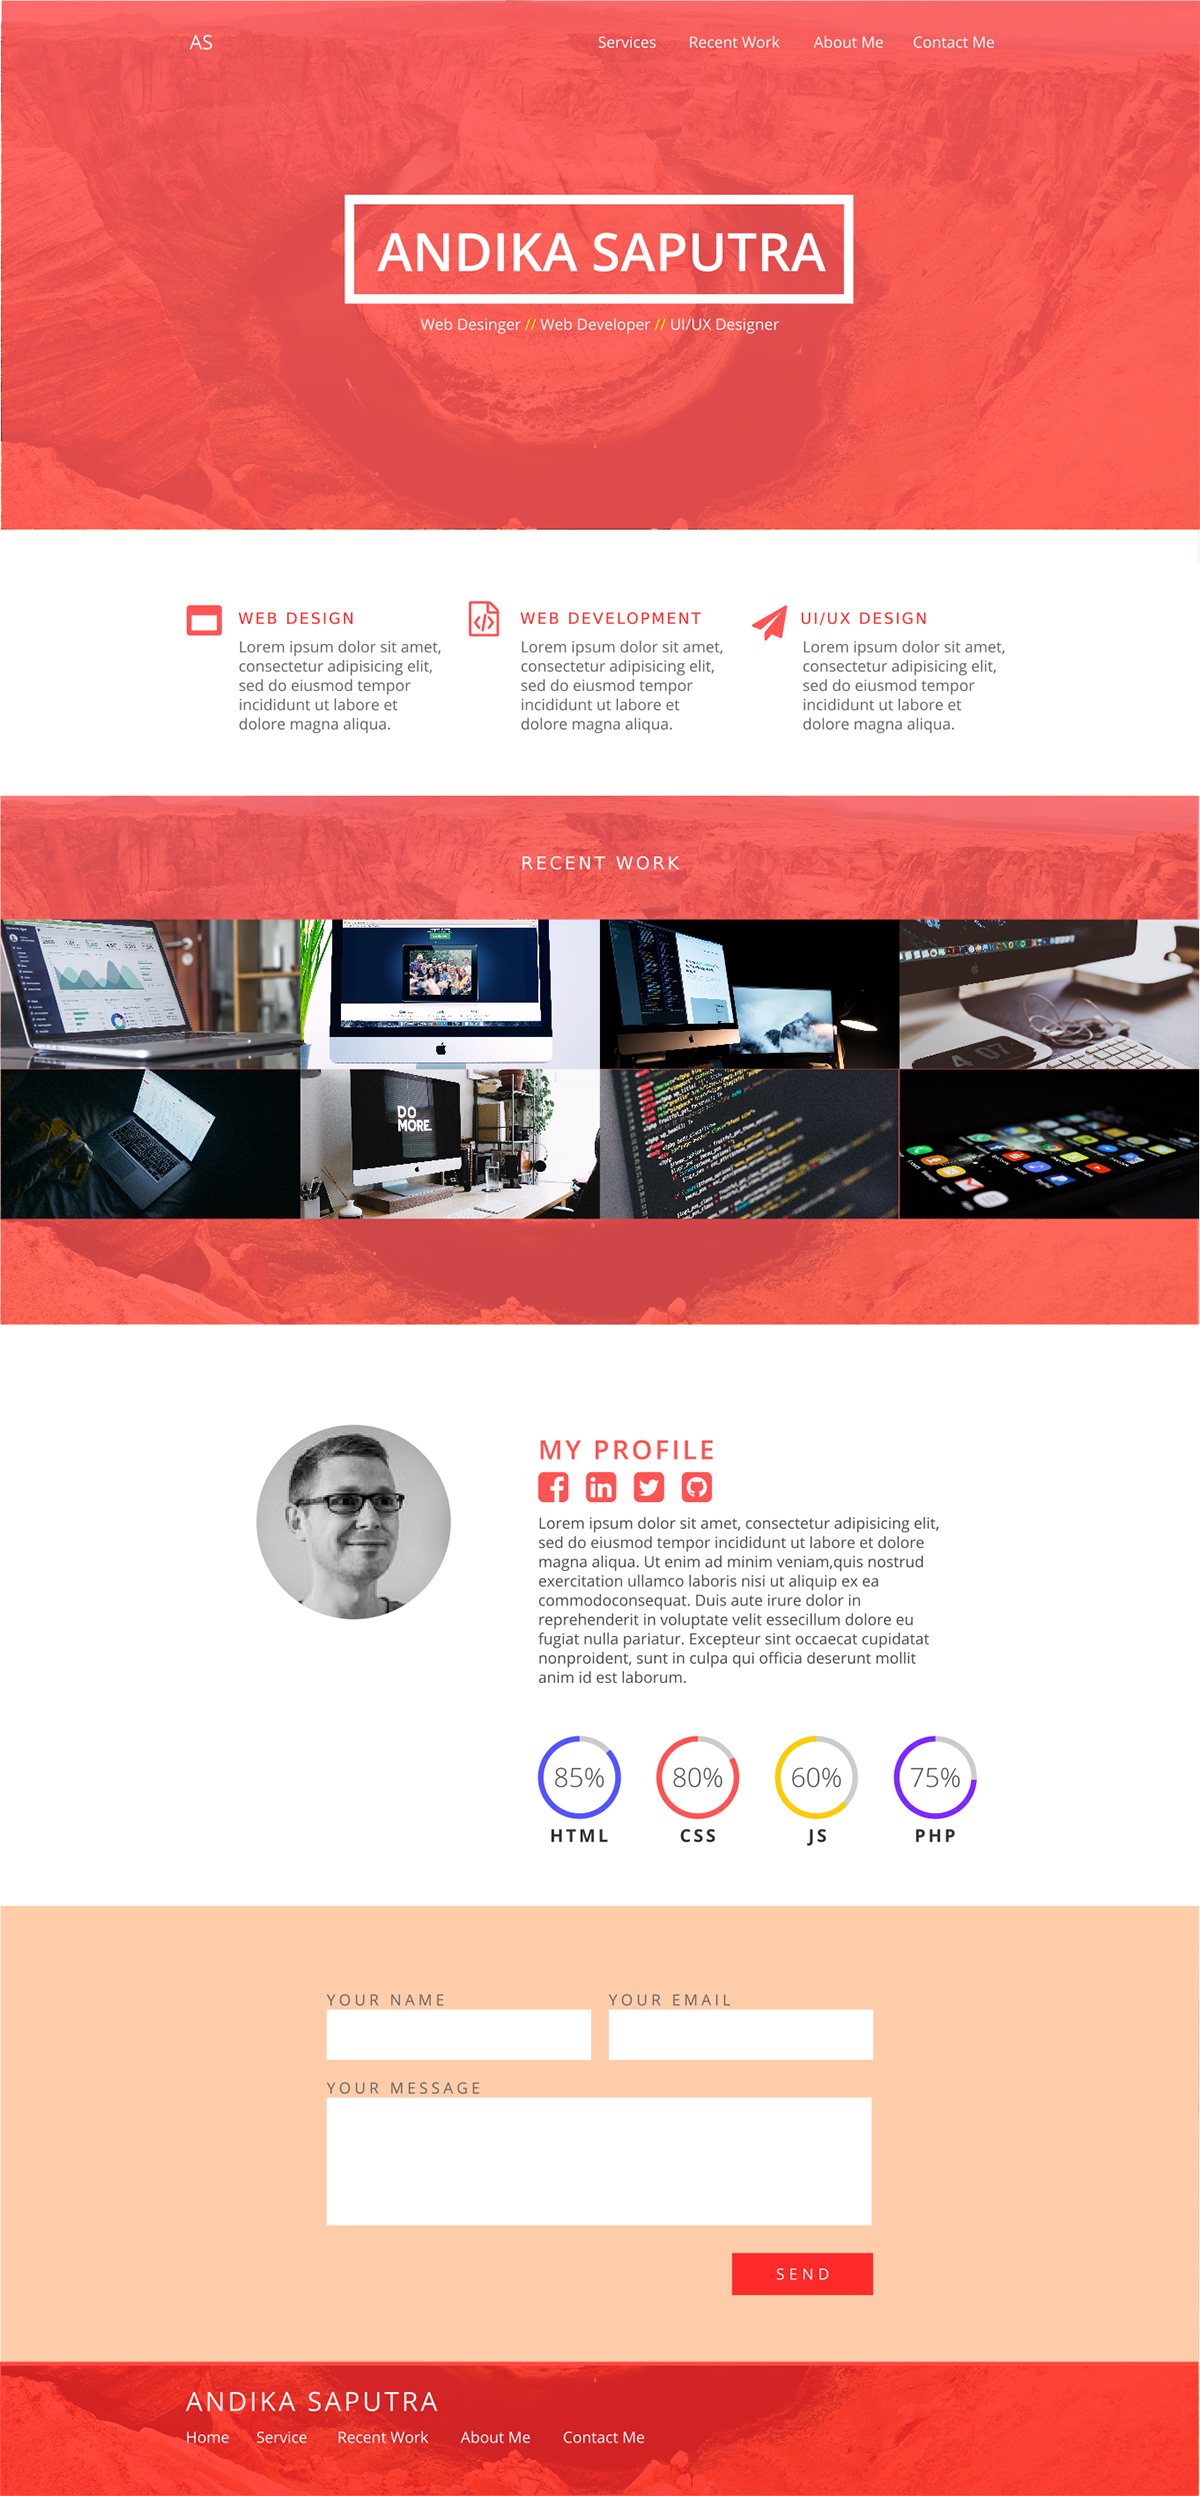 Web Design  flat design landing page inkscape